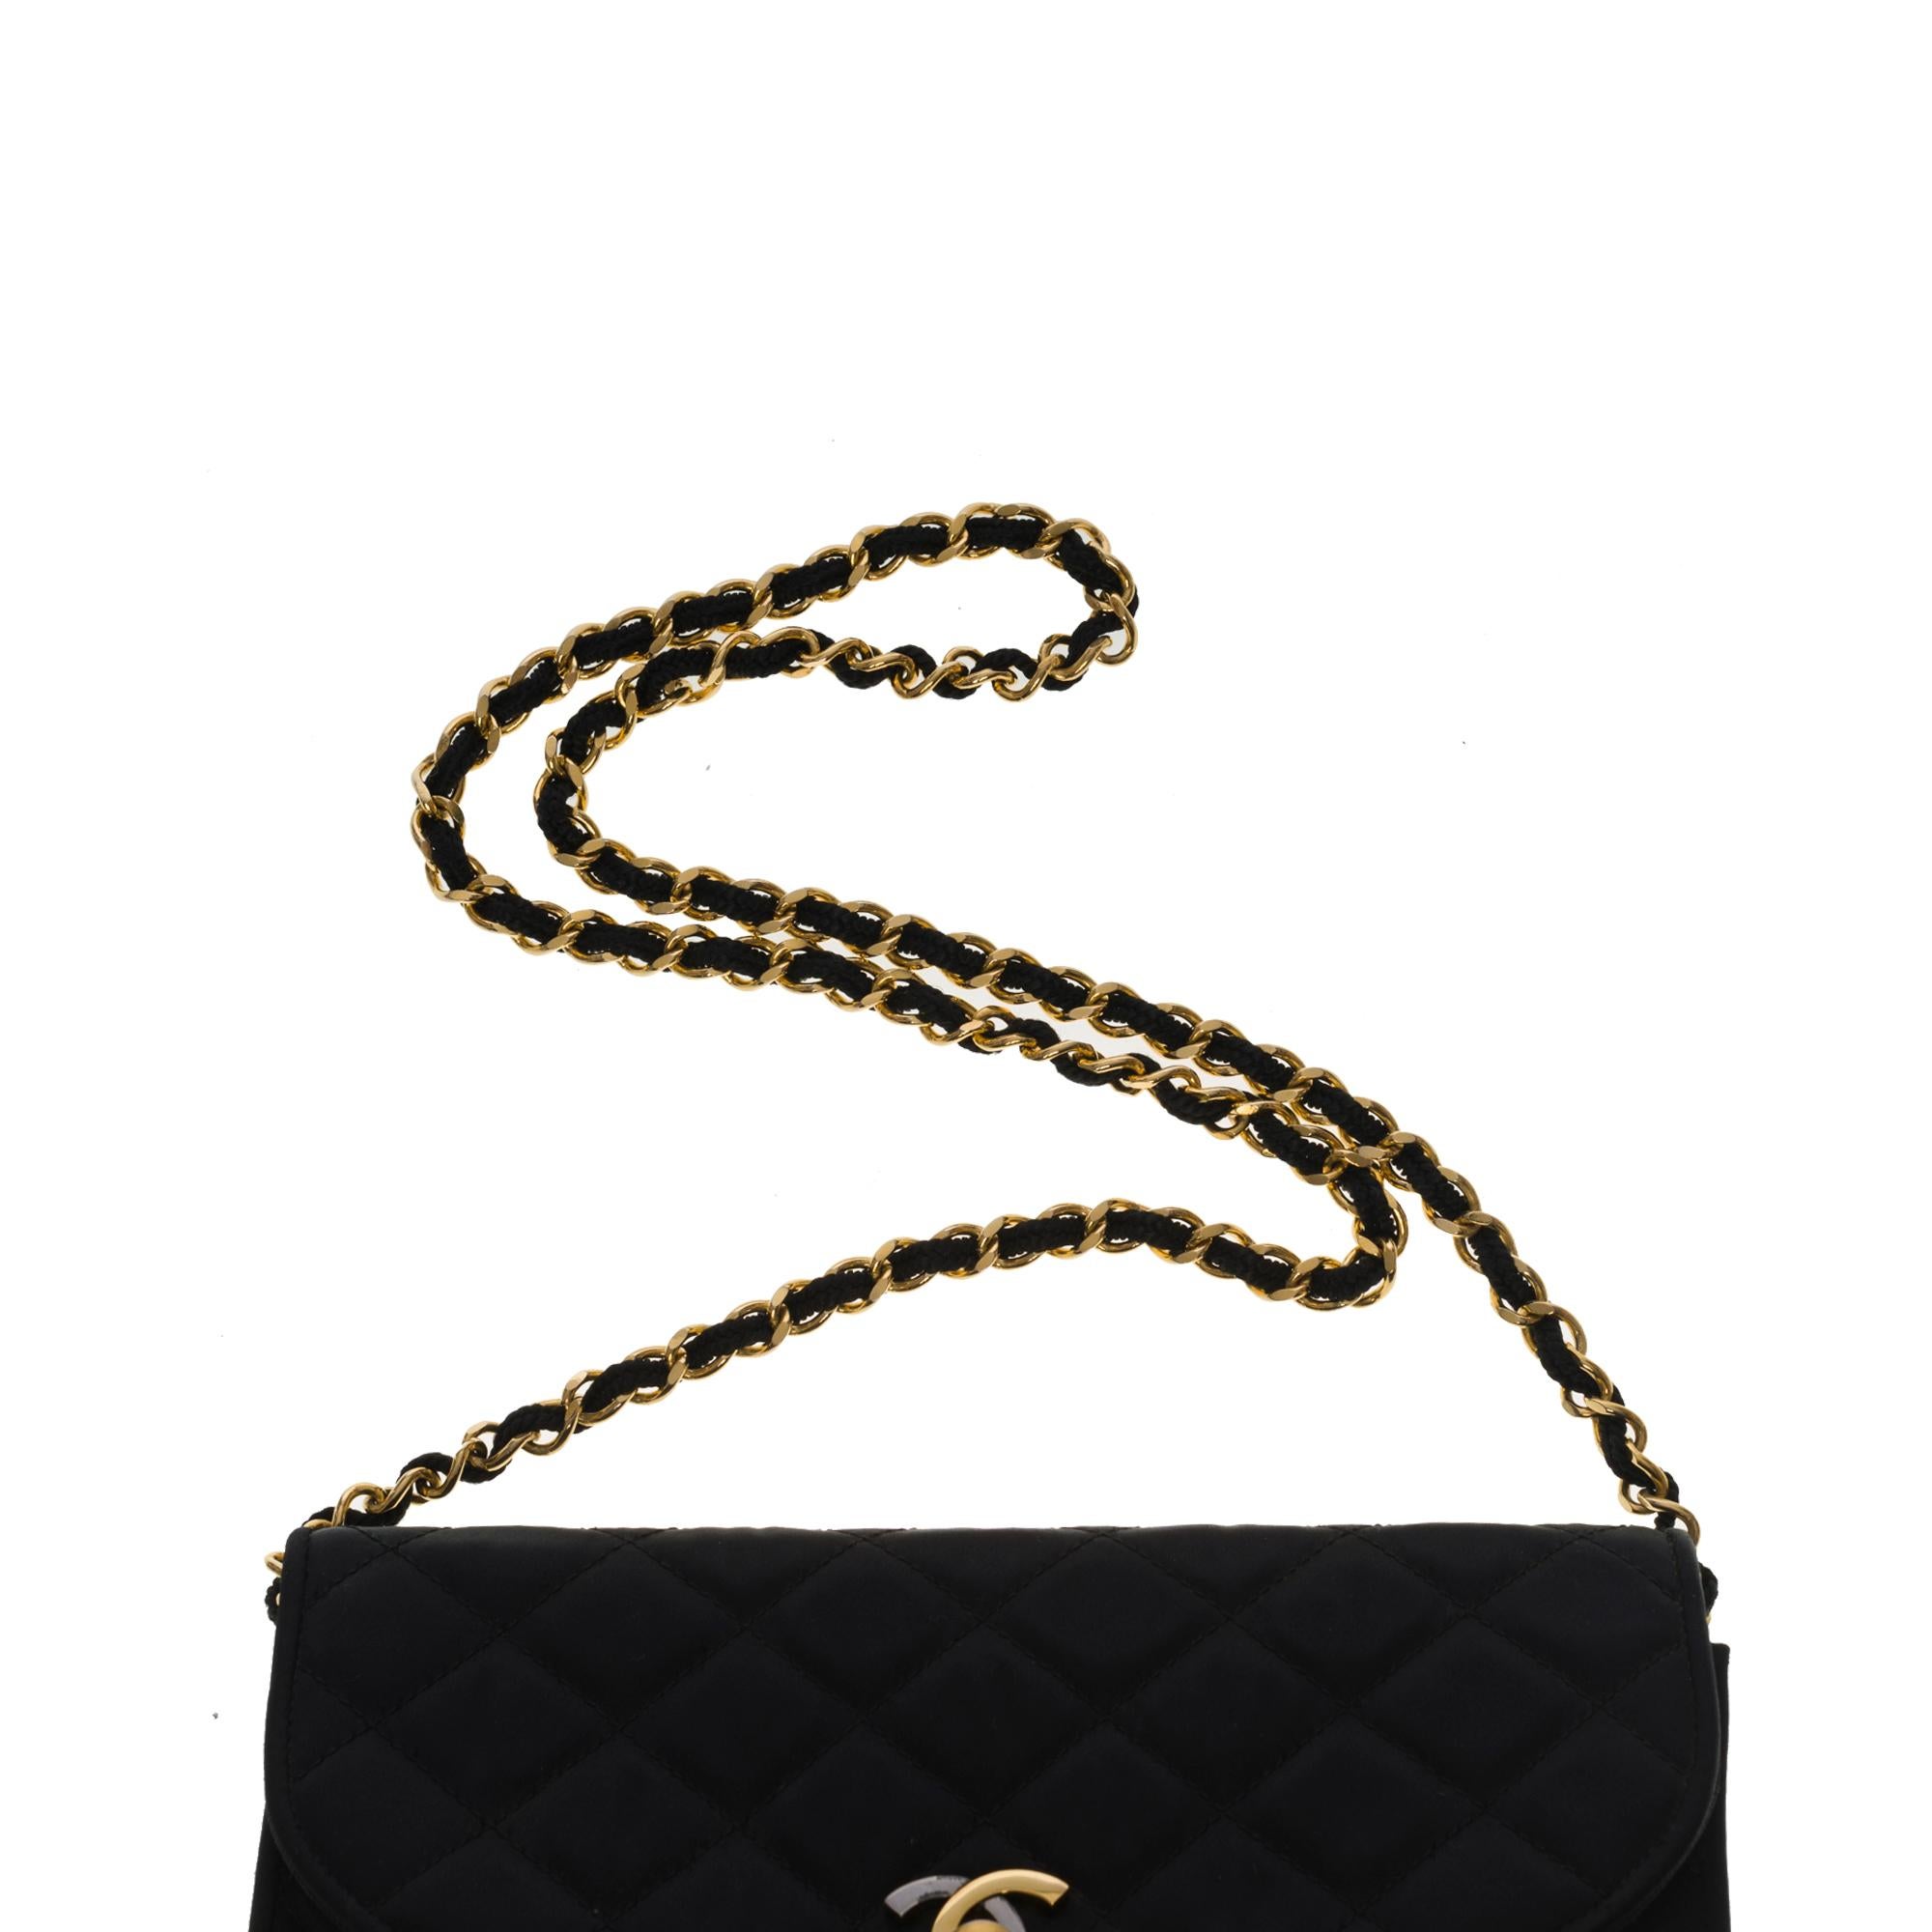 Chanel vintage half moon shoulder flap bag in black quilted satin, GHW 2